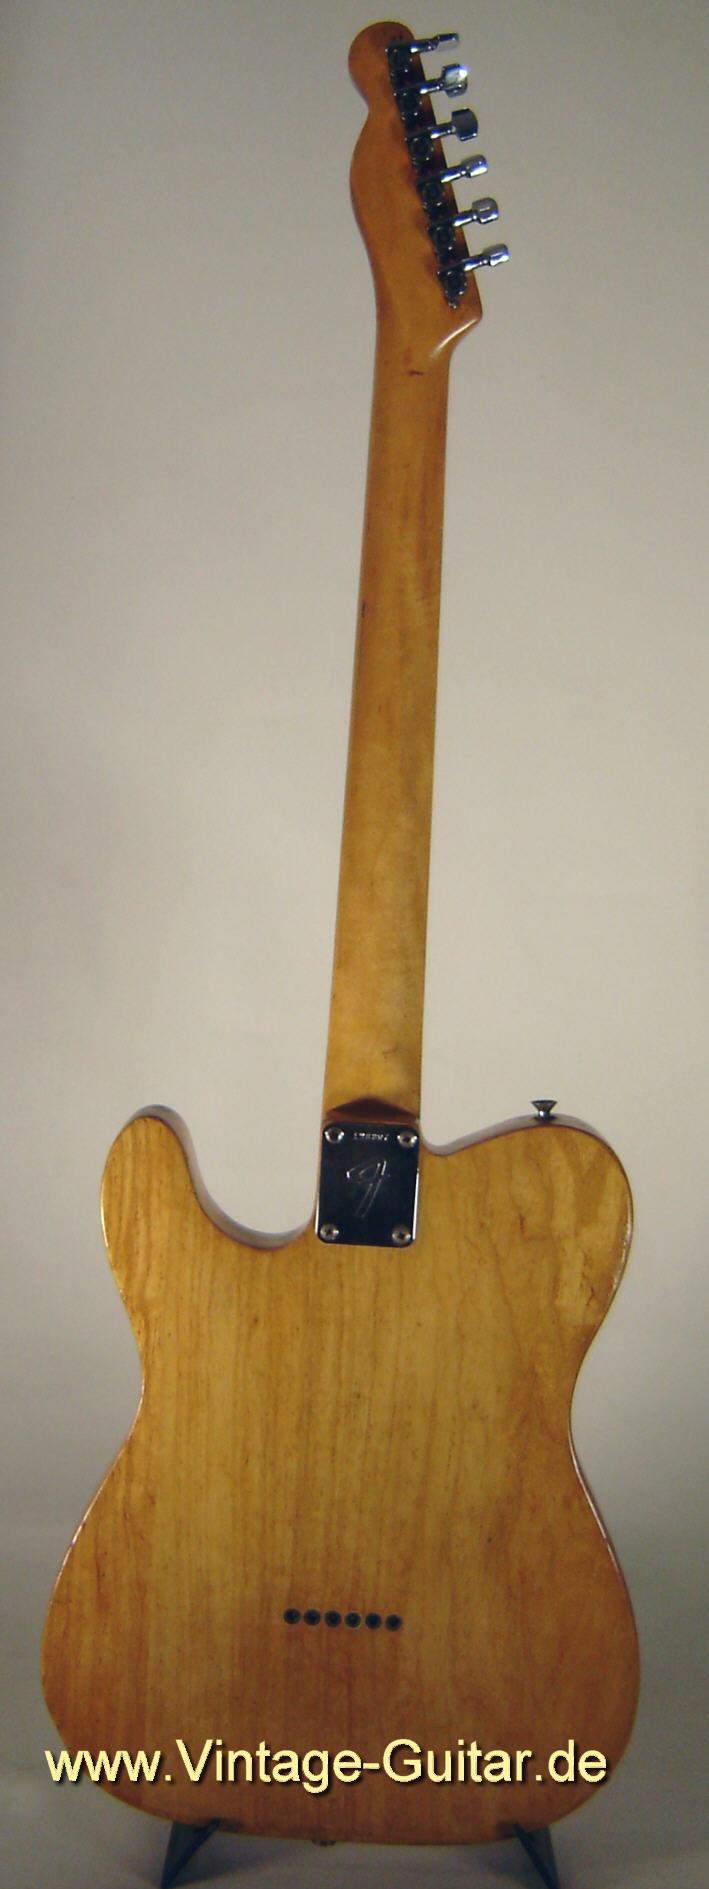 Fender-Telecaster-1967-refinished-back.jpg